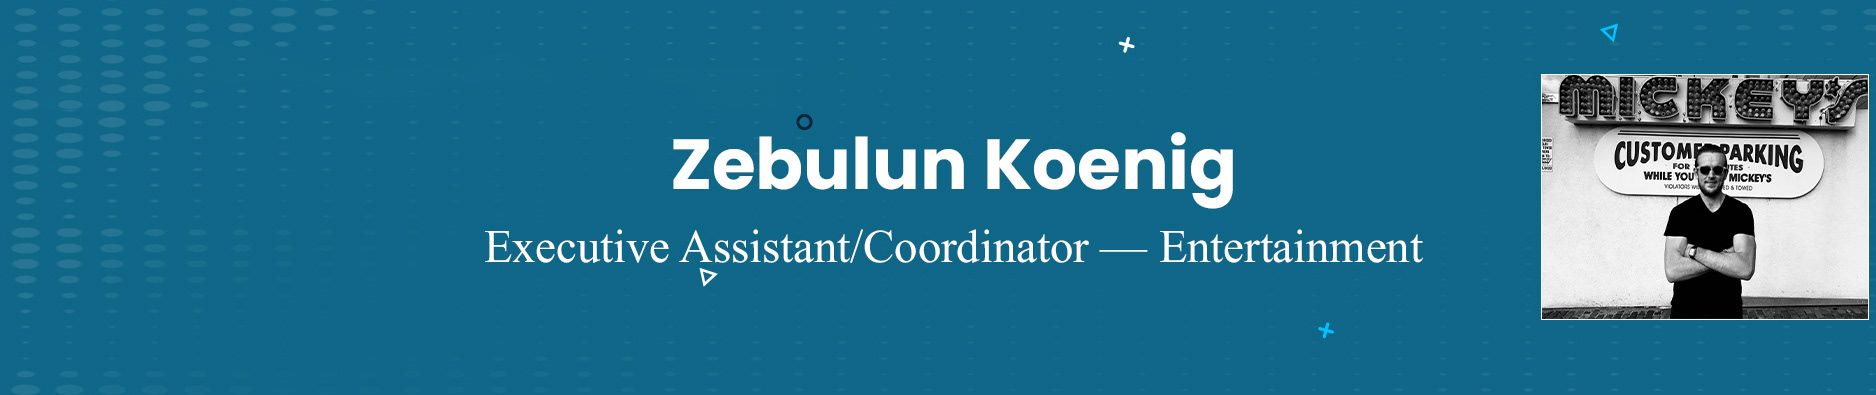 Zebulun Koenig's profile banner